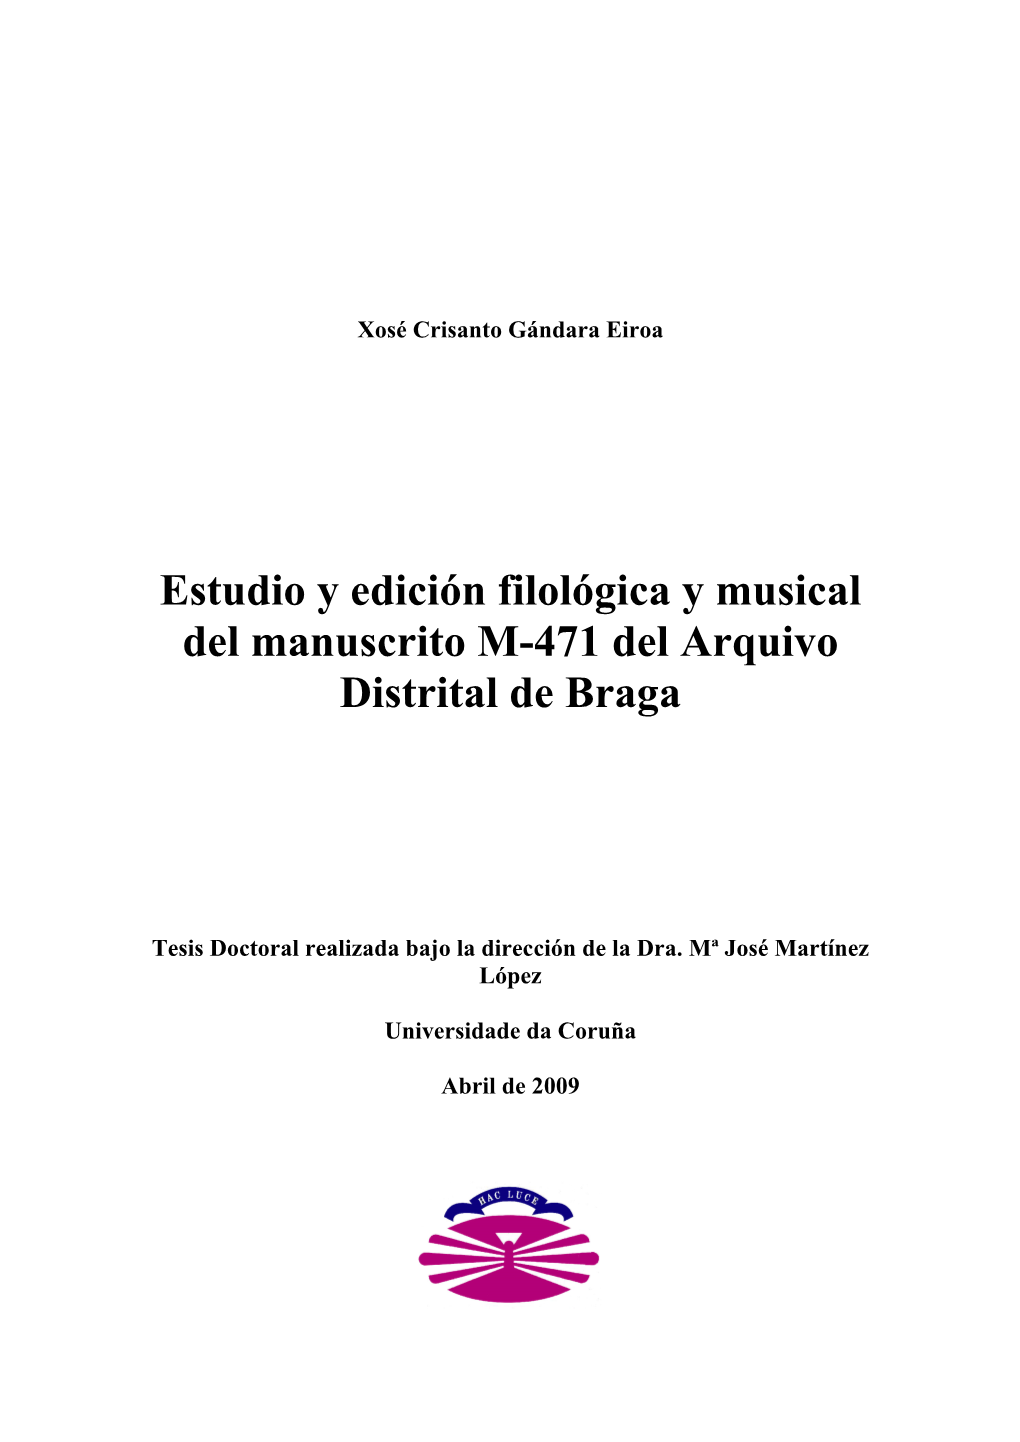 Estudio Y Edición Filológica Y Musical Del Manuscrito M-471 Del Arquivo Distrital De Braga